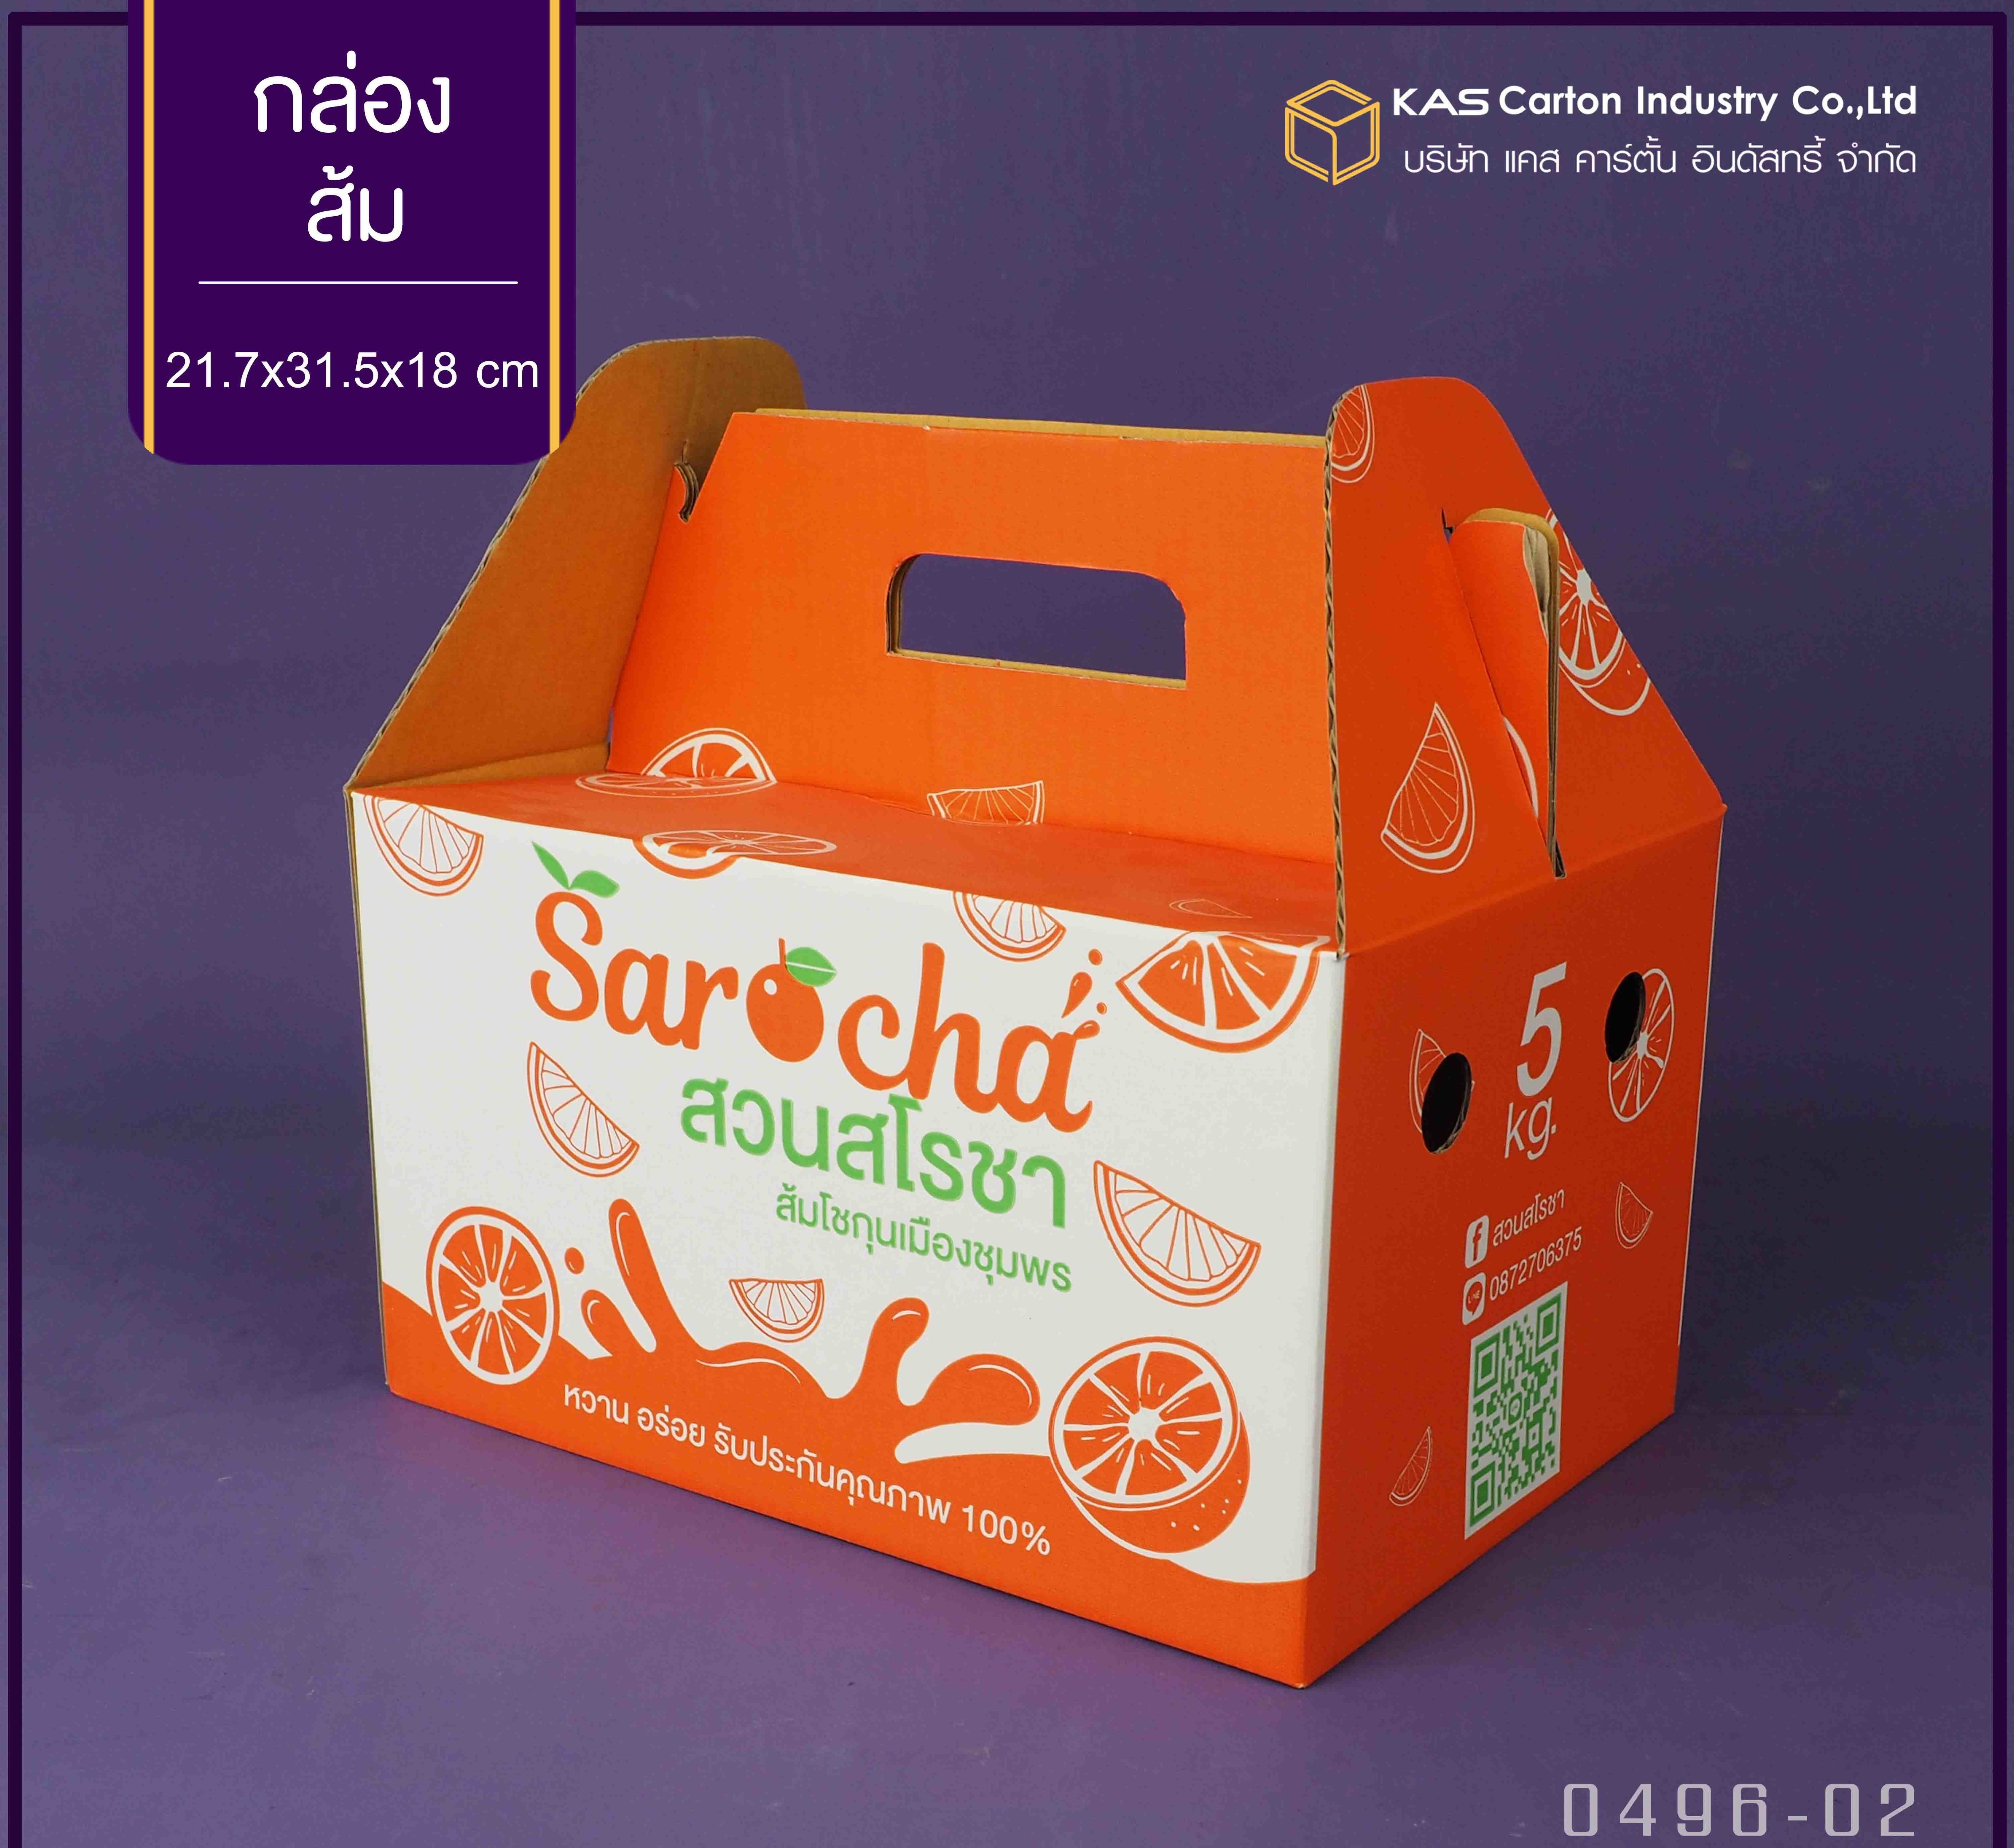 กล่องลูกฟูก สำเร็จรูป และ สั่งผลิต ตามความต้องการลูกค้า กล่องลูกฟูก SME กล่องกระดาษลูกฟูก กล่องผลไม้ บรรจุ ส้ม  Brand Sarocha